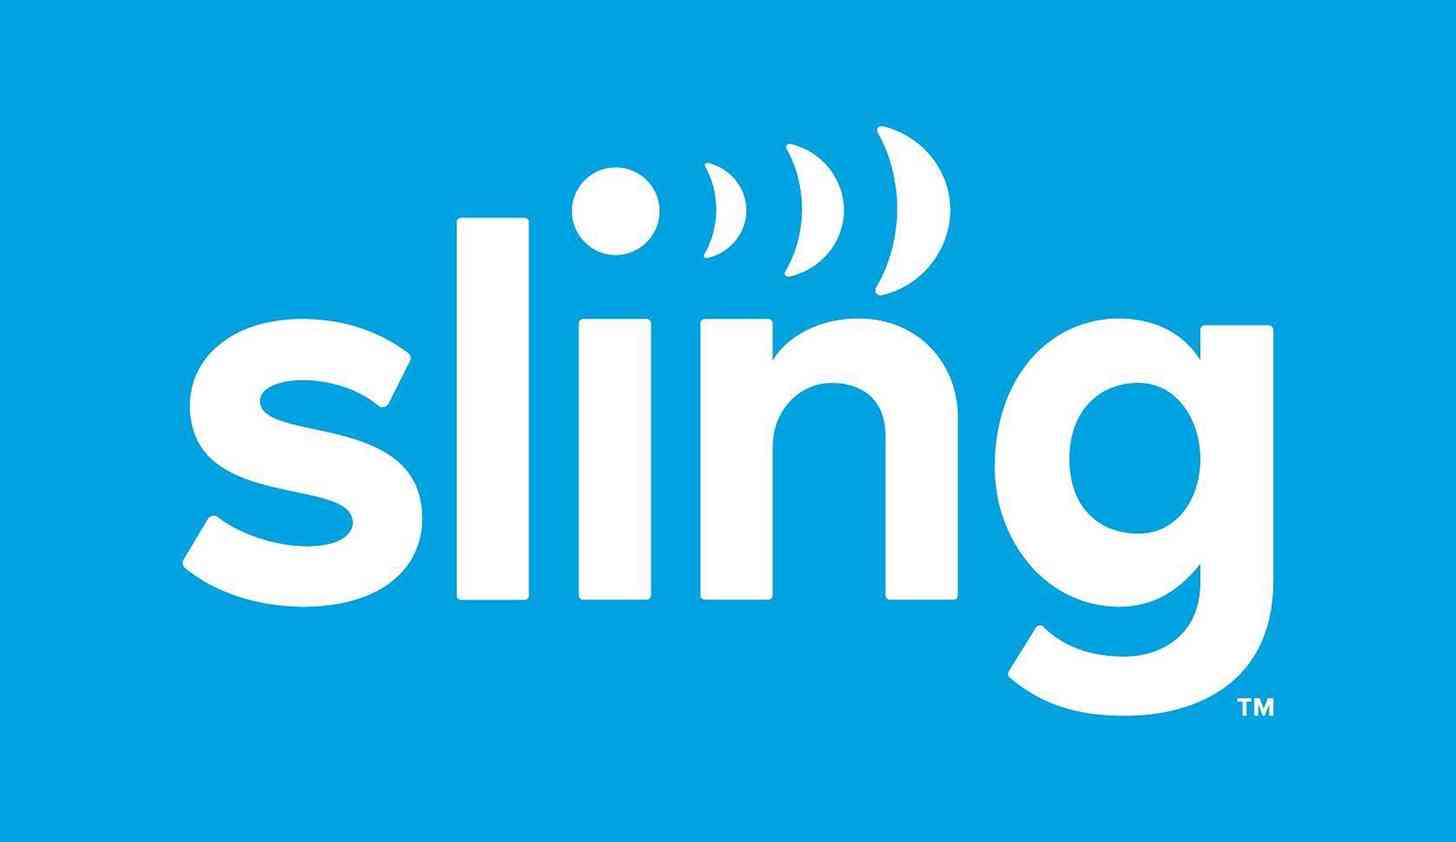 Sling TV logo